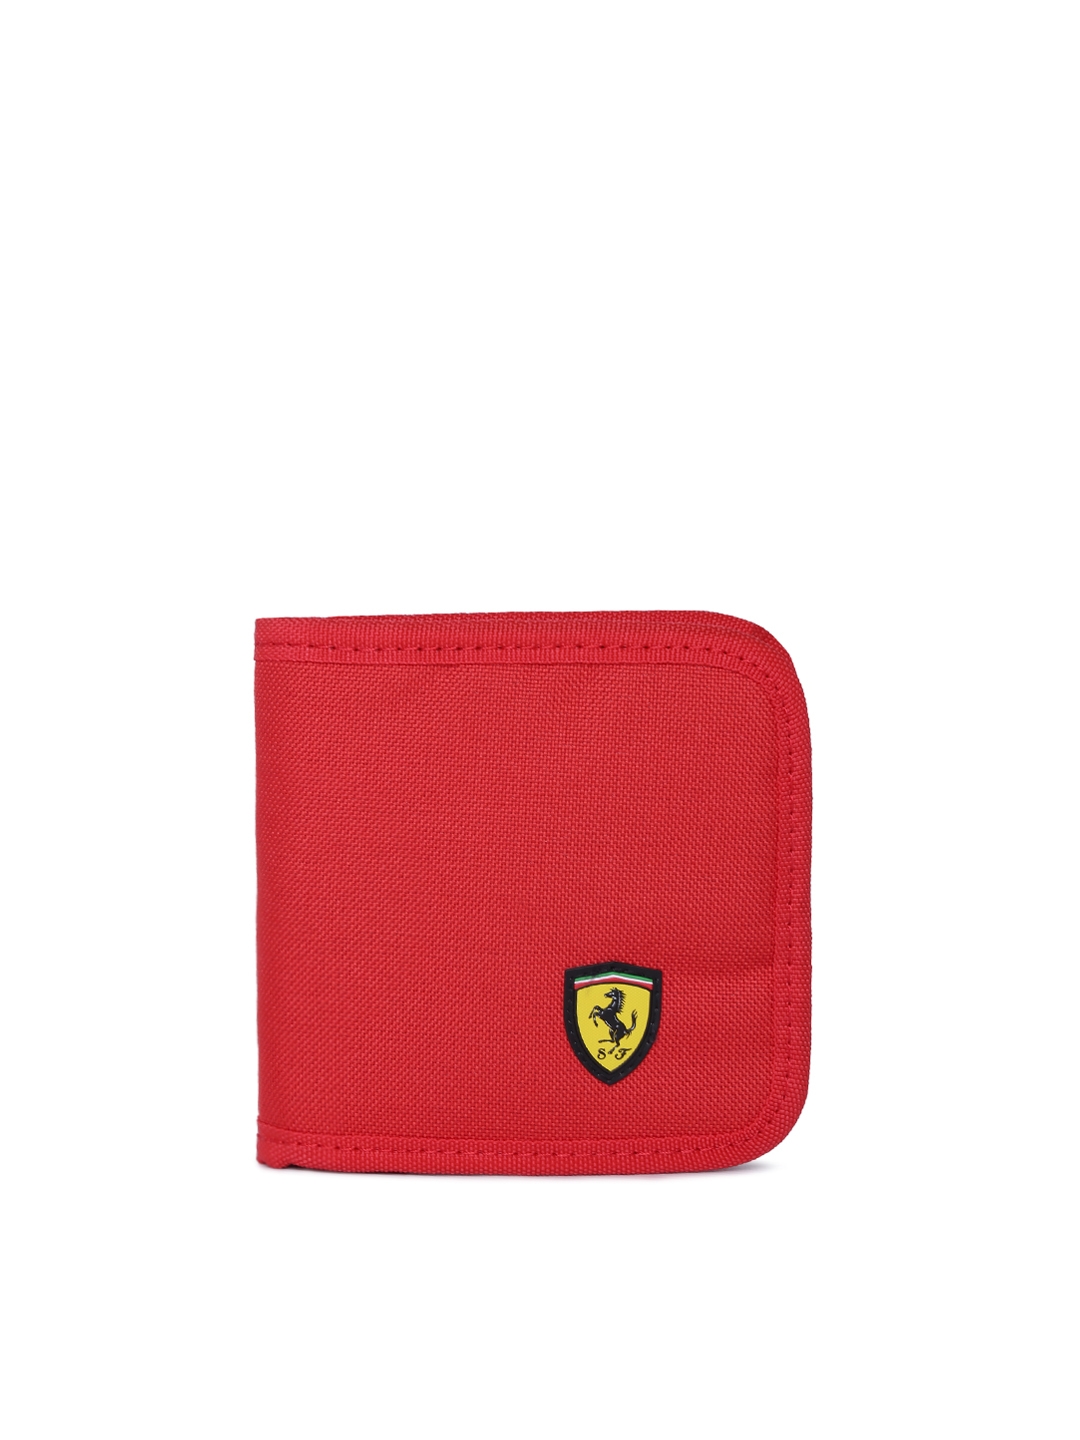 puma red purse